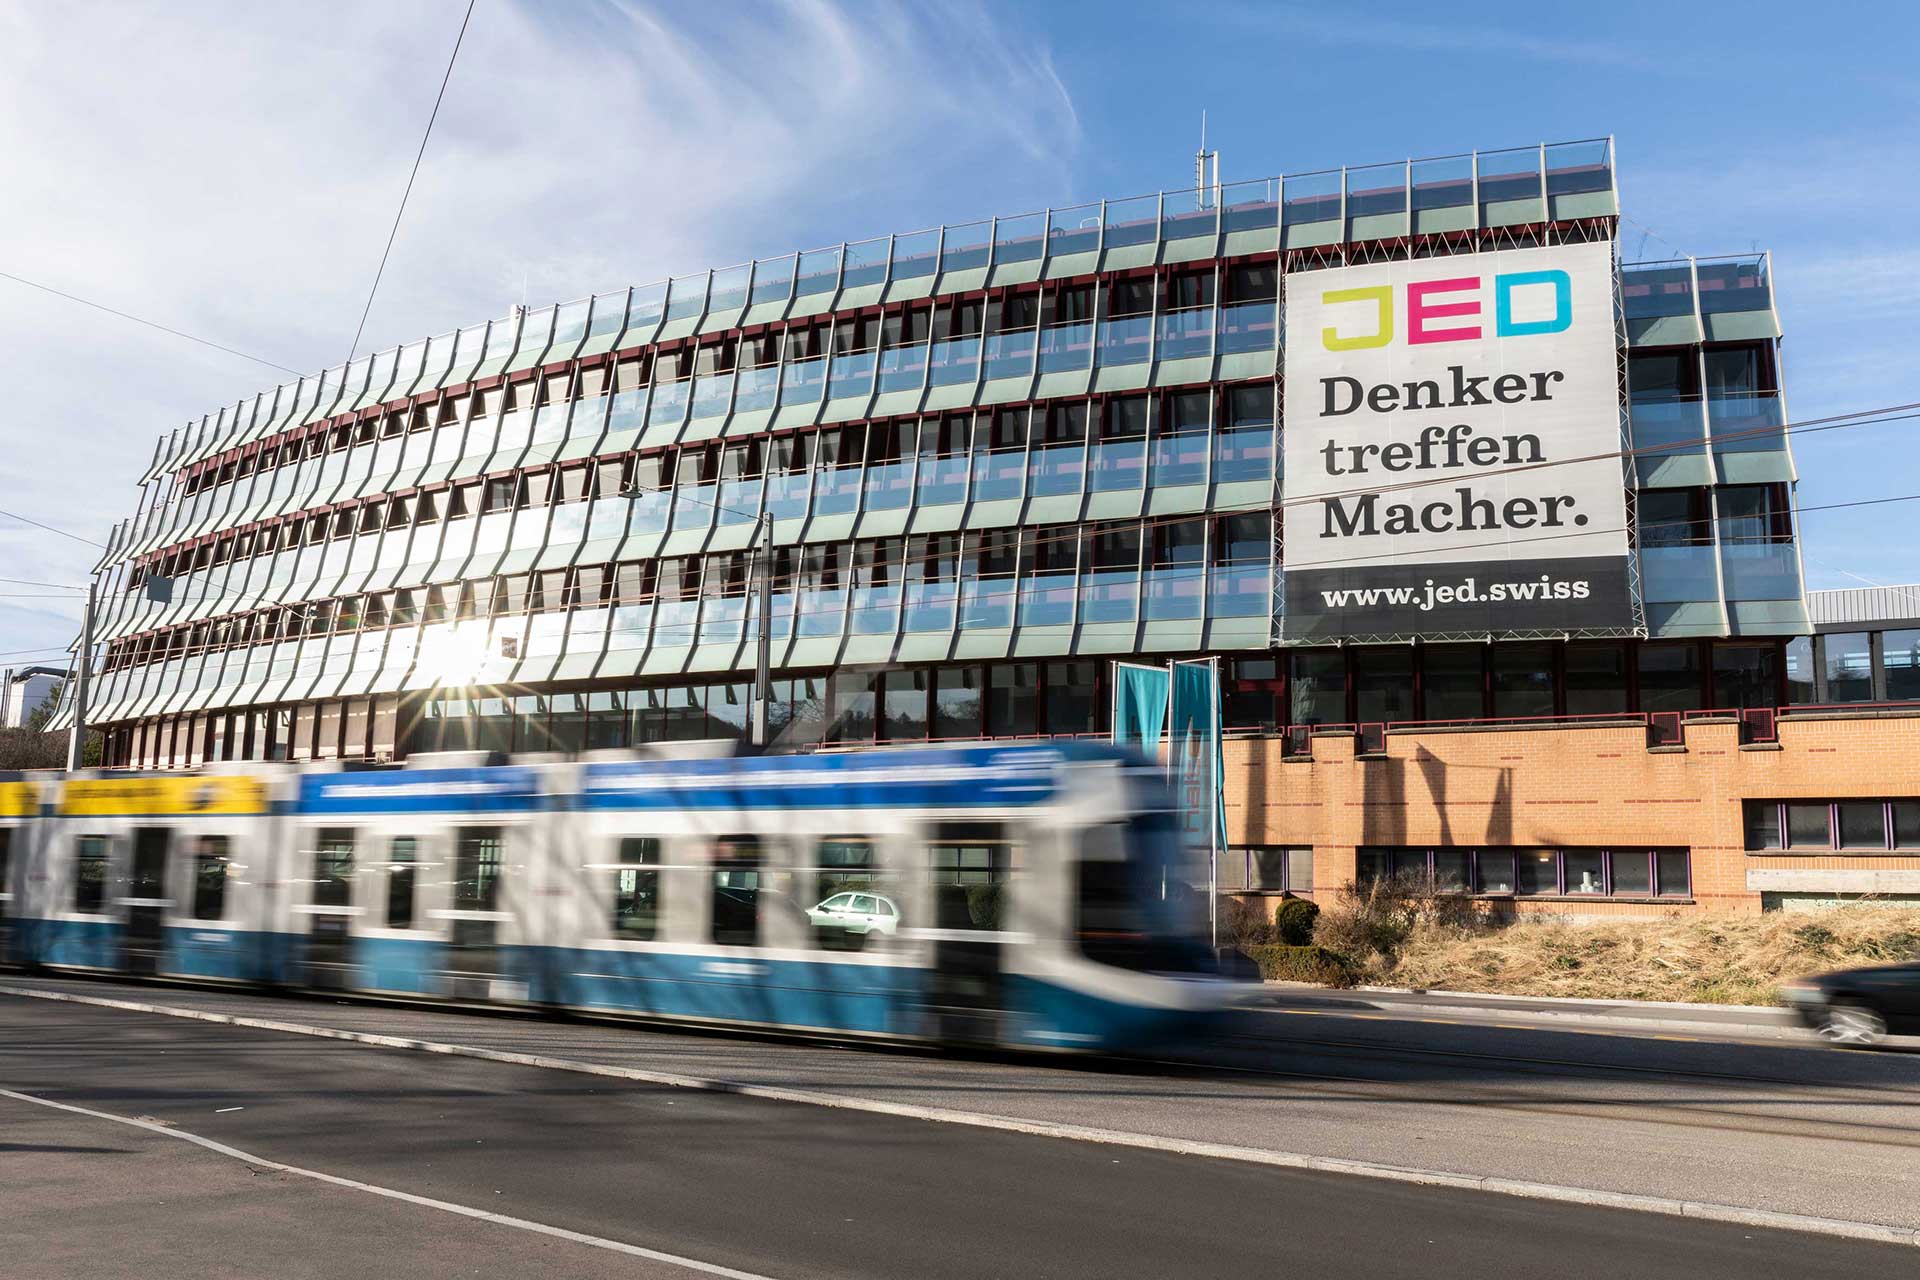 Abbildung: Fassadenansicht von JED – Symbol für Innovation und Zusammenarbeit.